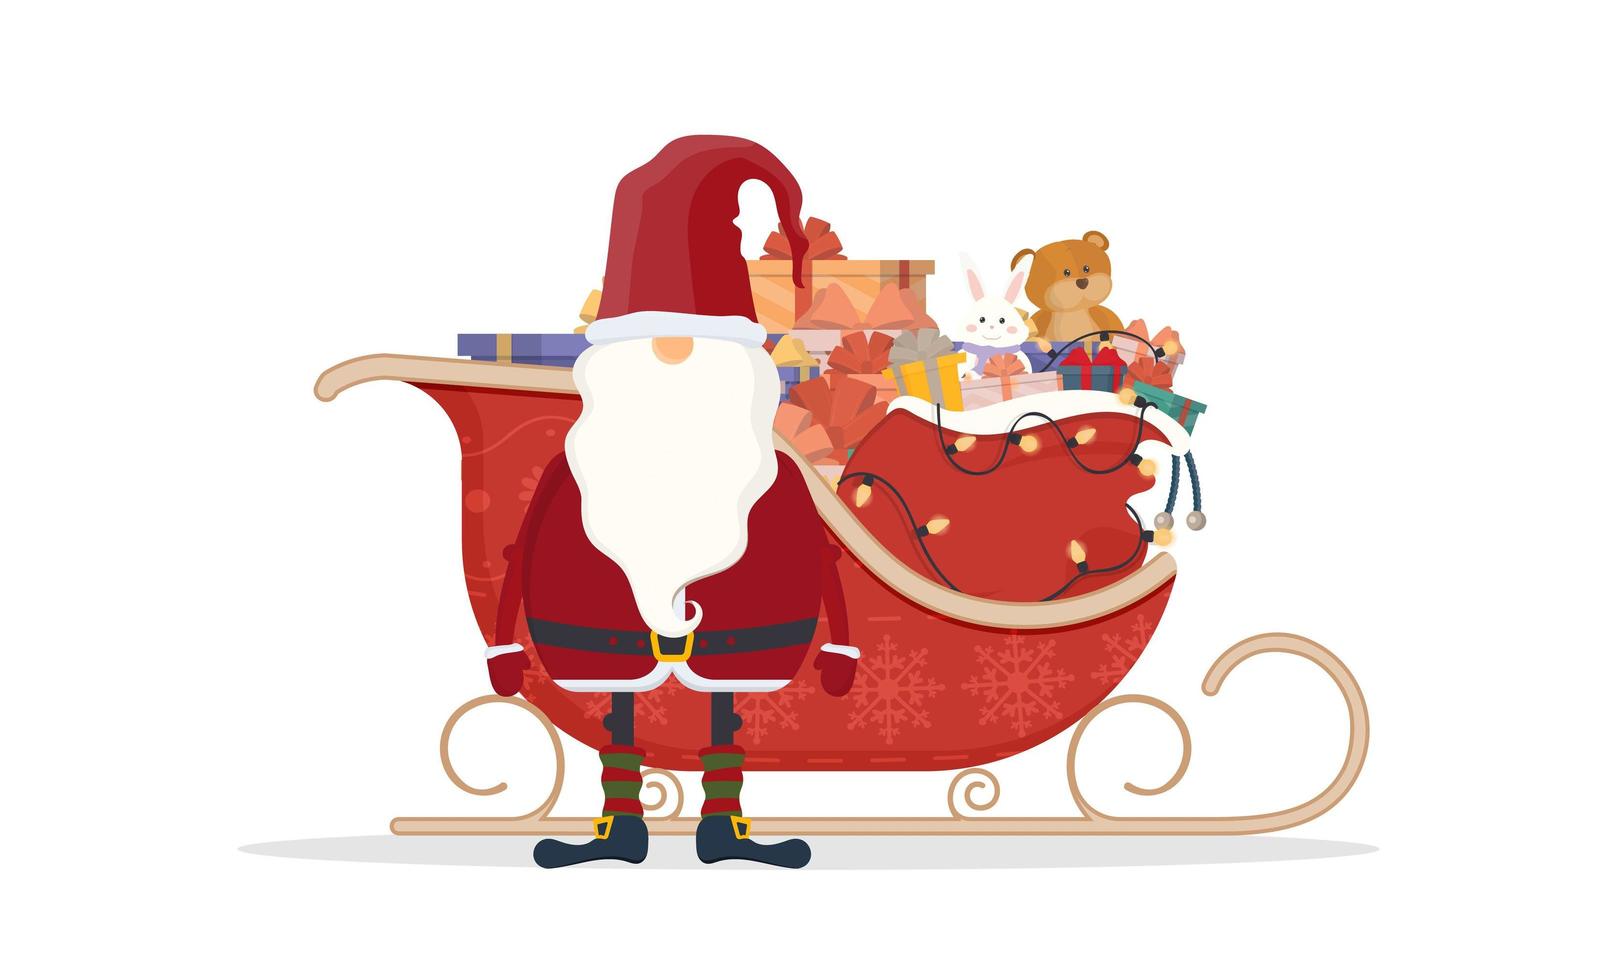 Weihnachtsmann mit roten Schlitten. Schlitten, Geschenke, Neujahr und Weihnachtskonzept. Vektor-Illustration isoliert auf weißem Hintergrund. Design im Cartoon-Stil. vektor